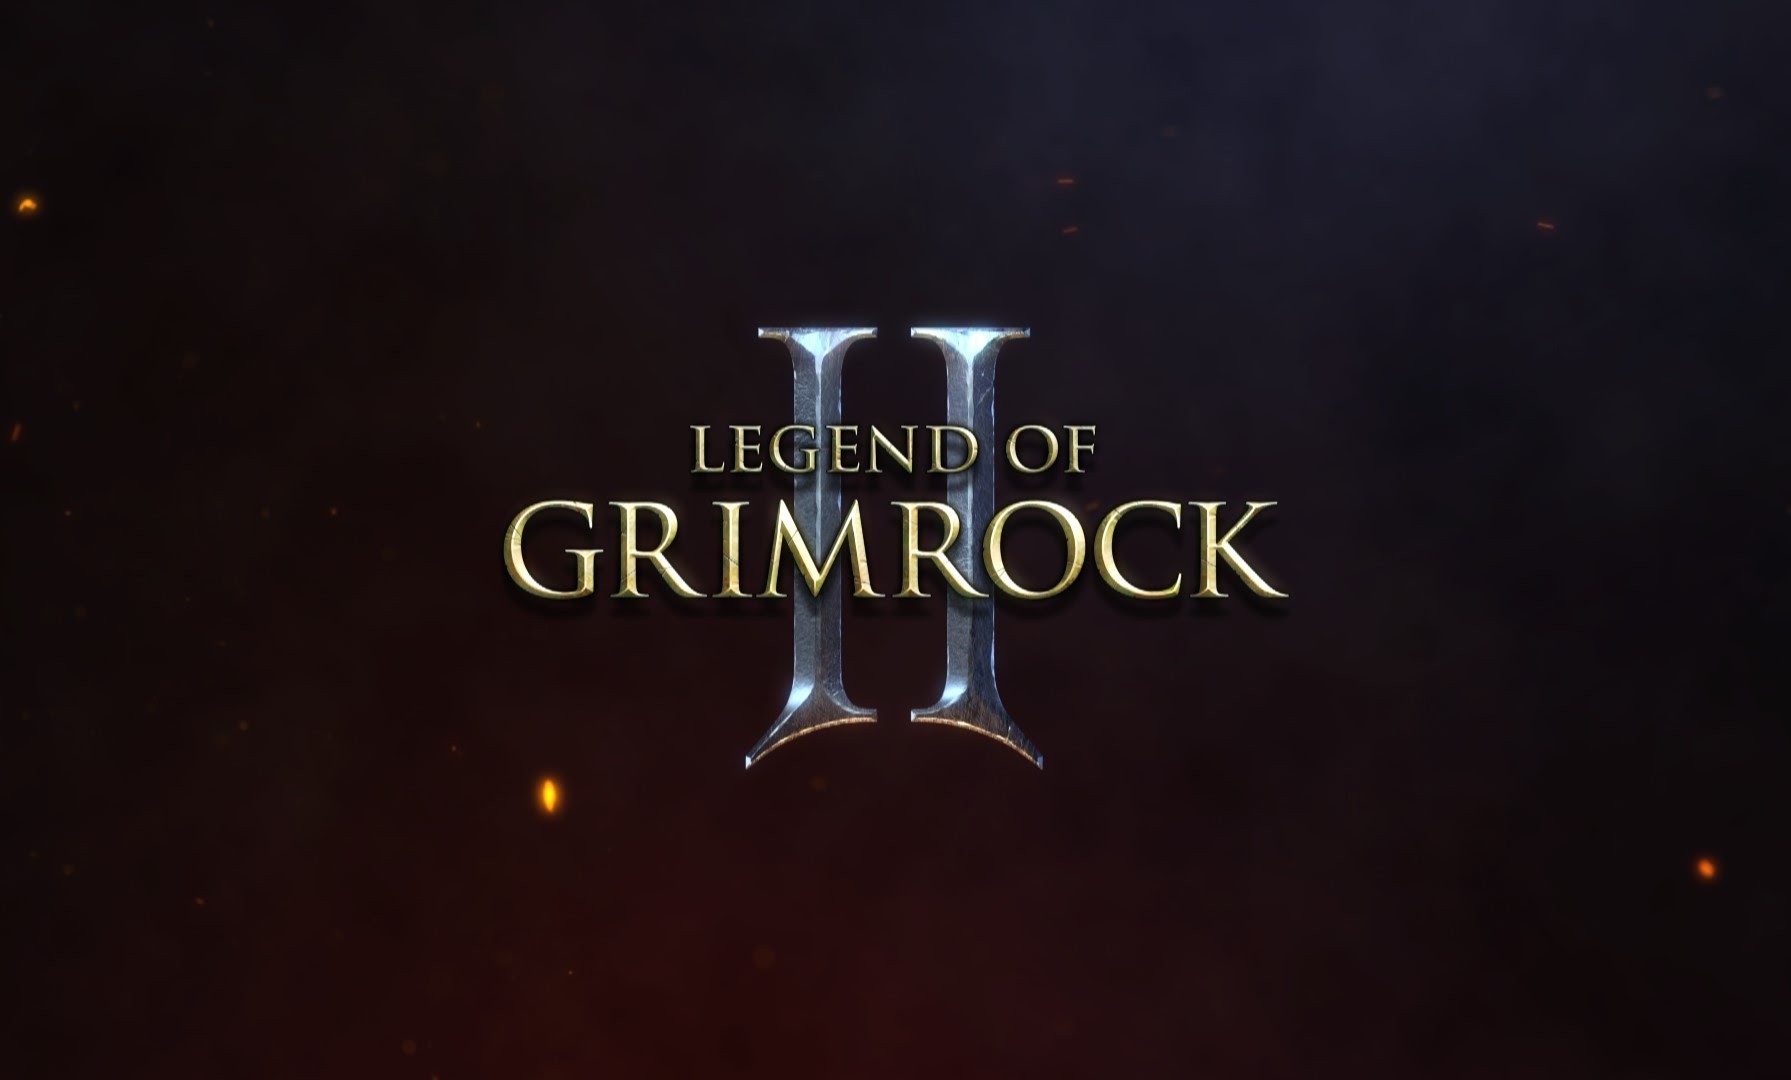 LEGEND OF GRIMROCK 2 EN OCTUBRE